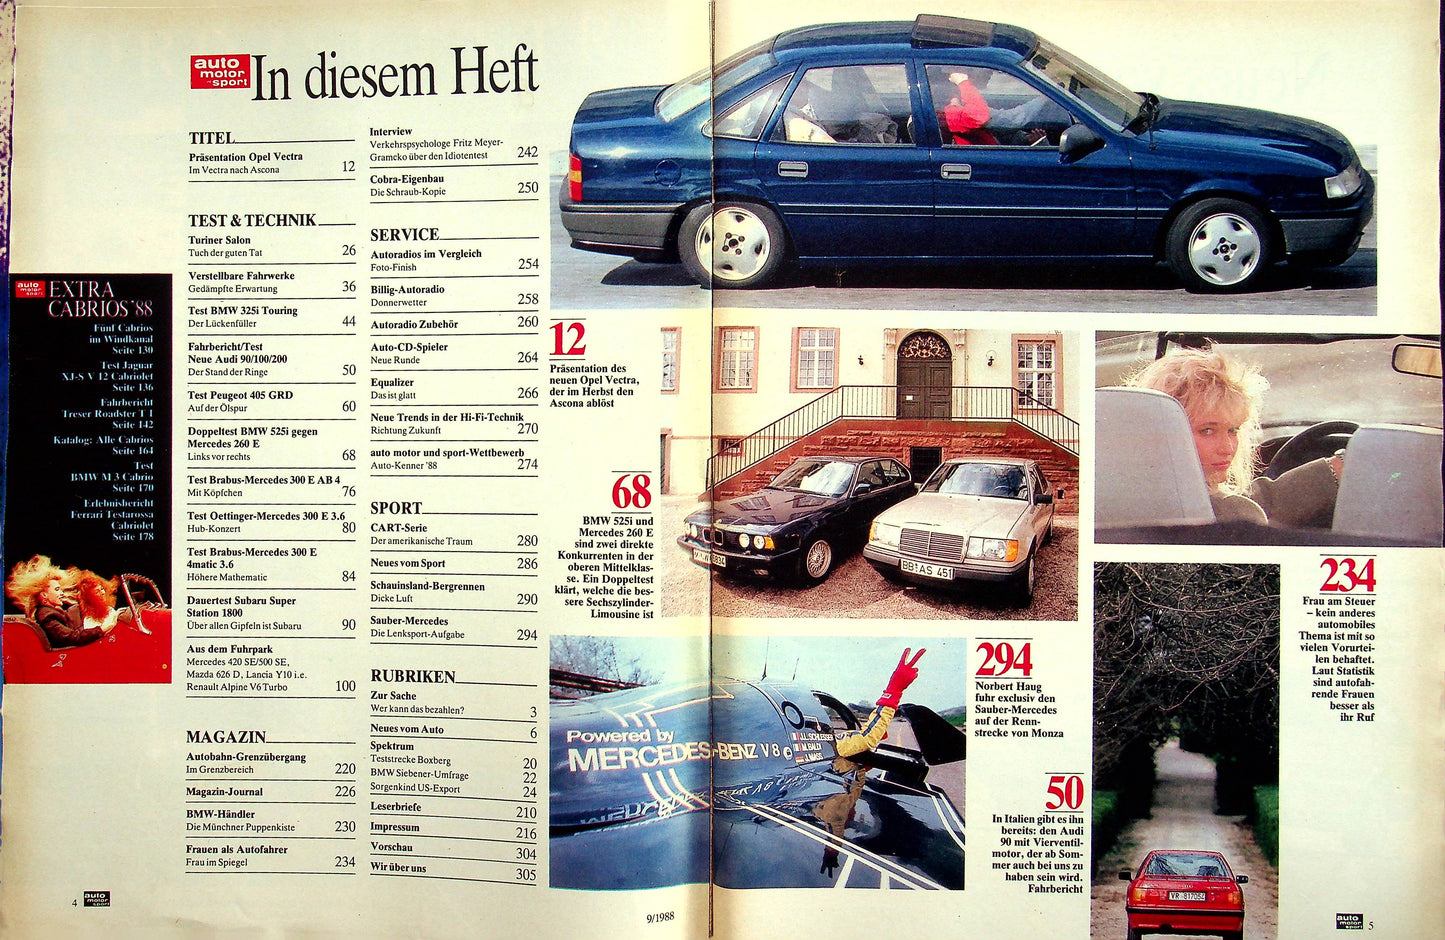 Auto Motor und Sport 09/1988